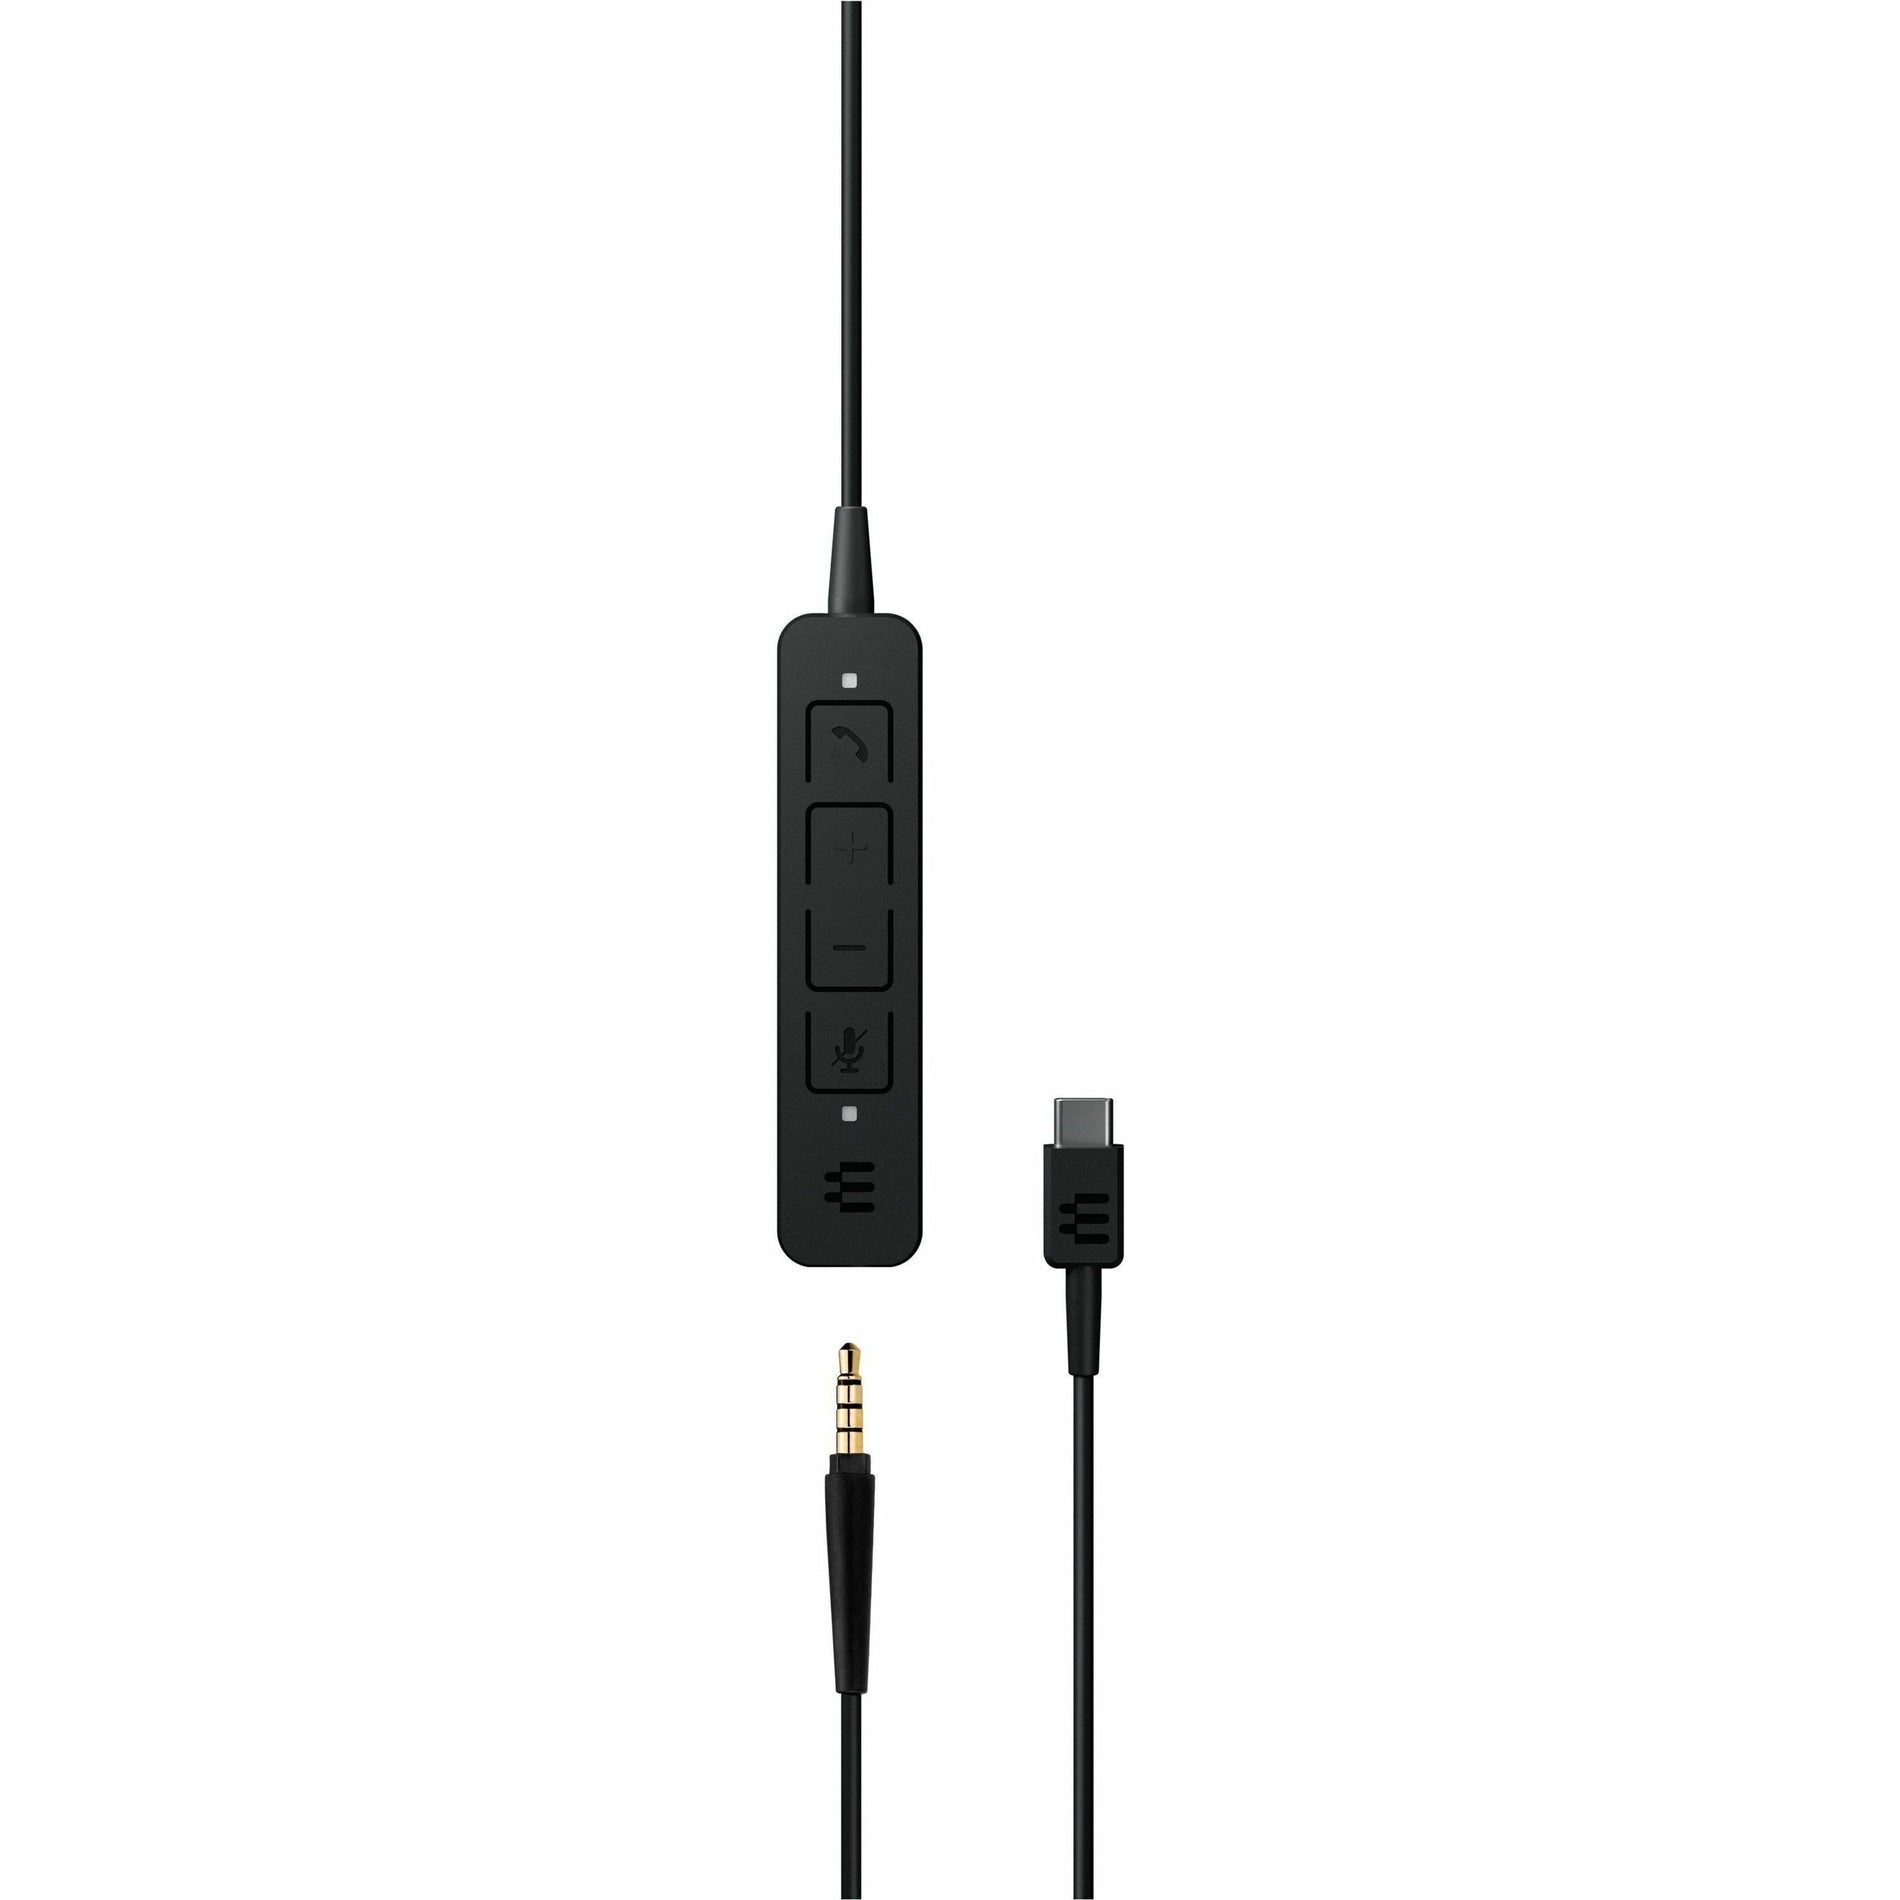 EPOS | SENNHEISER 1000920 ADAPT 165 USB-C II Cuffia Cuffia sovraurale con 2 anni di garanzia Microfono integrato Compatibilità con dispositivi mobili